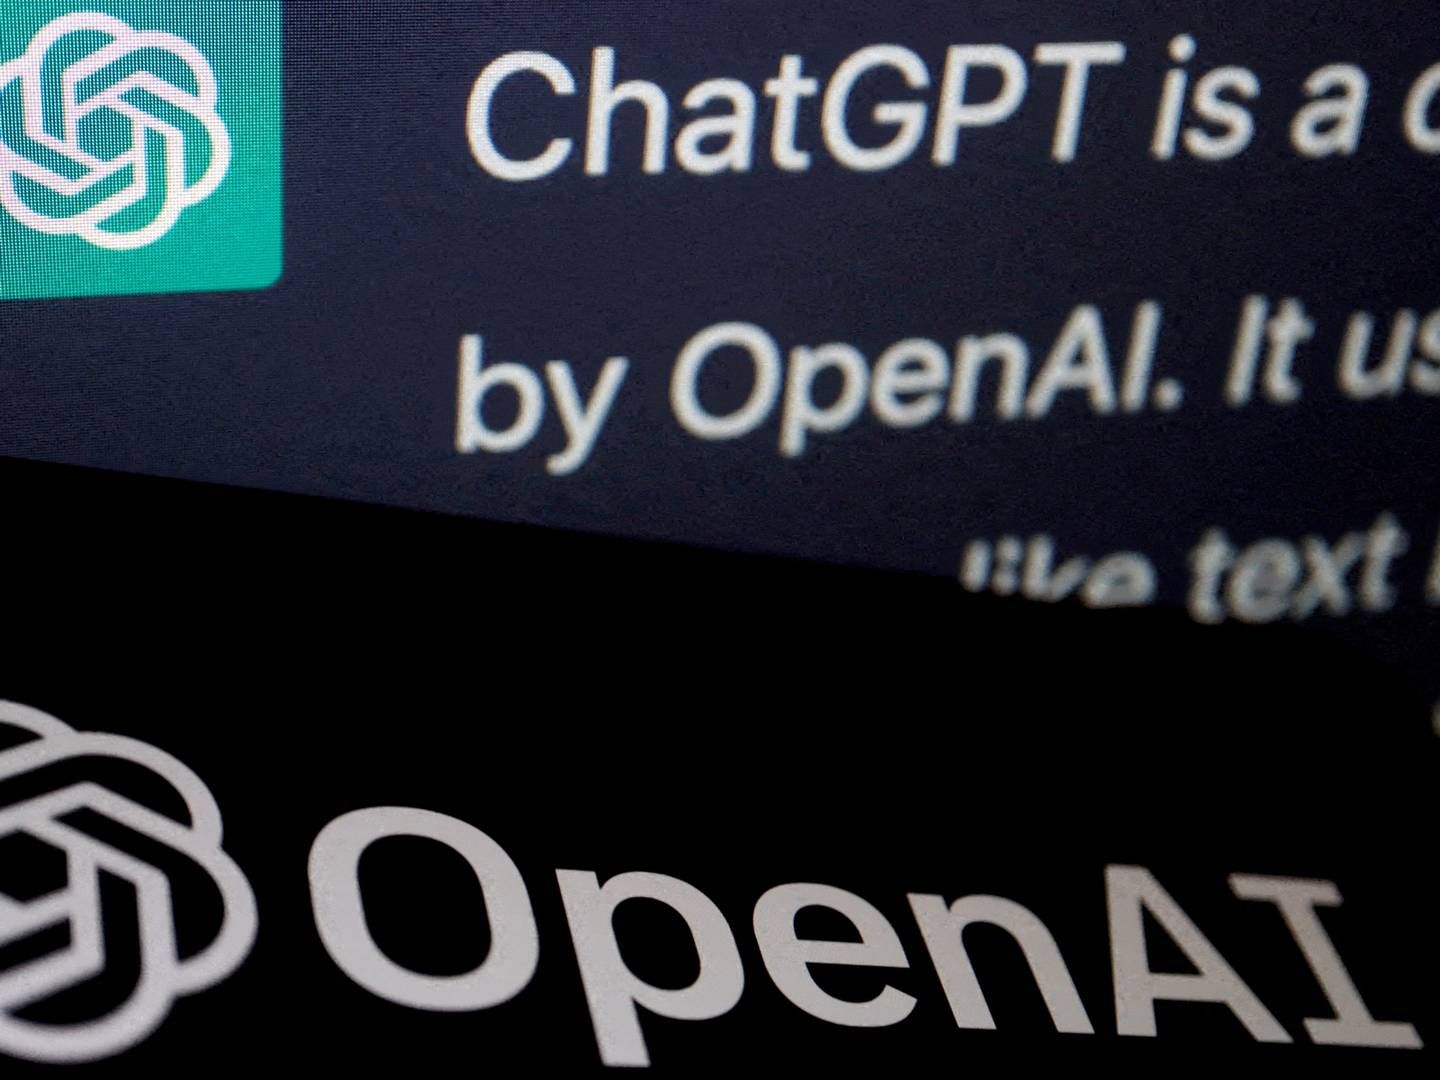 ChatGPT-ejeren OpenAI har også fået en aftale i hus med Associated Press, men er stort set samtidig blevet sagsøgt for brud på ophavsret af amerikanske forfattere.